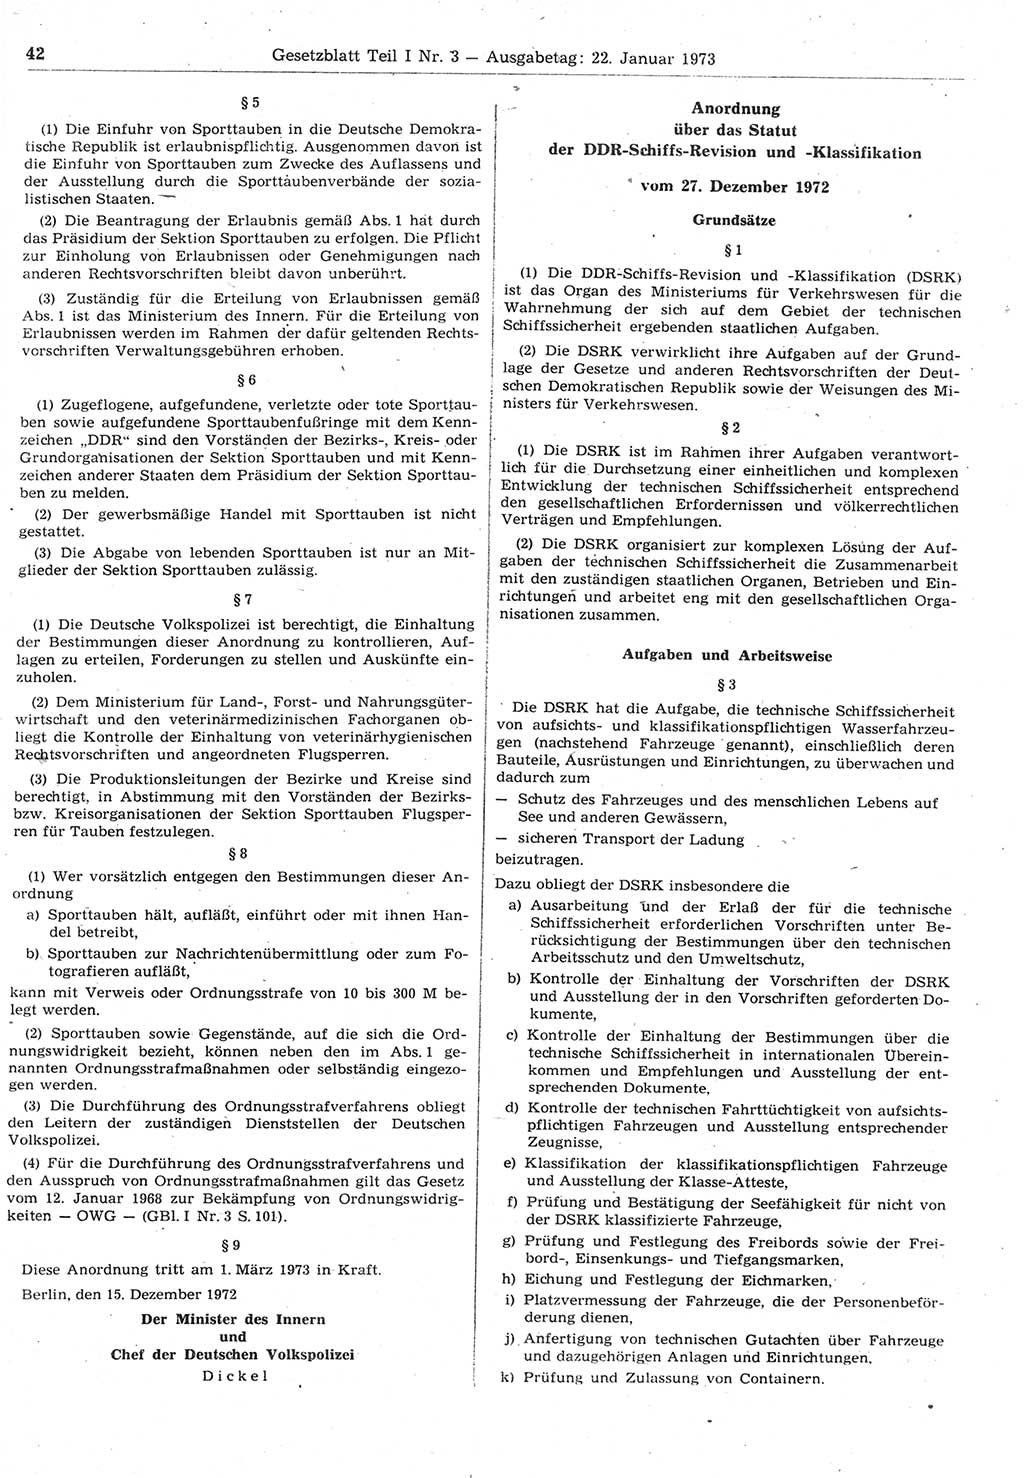 Gesetzblatt (GBl.) der Deutschen Demokratischen Republik (DDR) Teil Ⅰ 1973, Seite 42 (GBl. DDR Ⅰ 1973, S. 42)